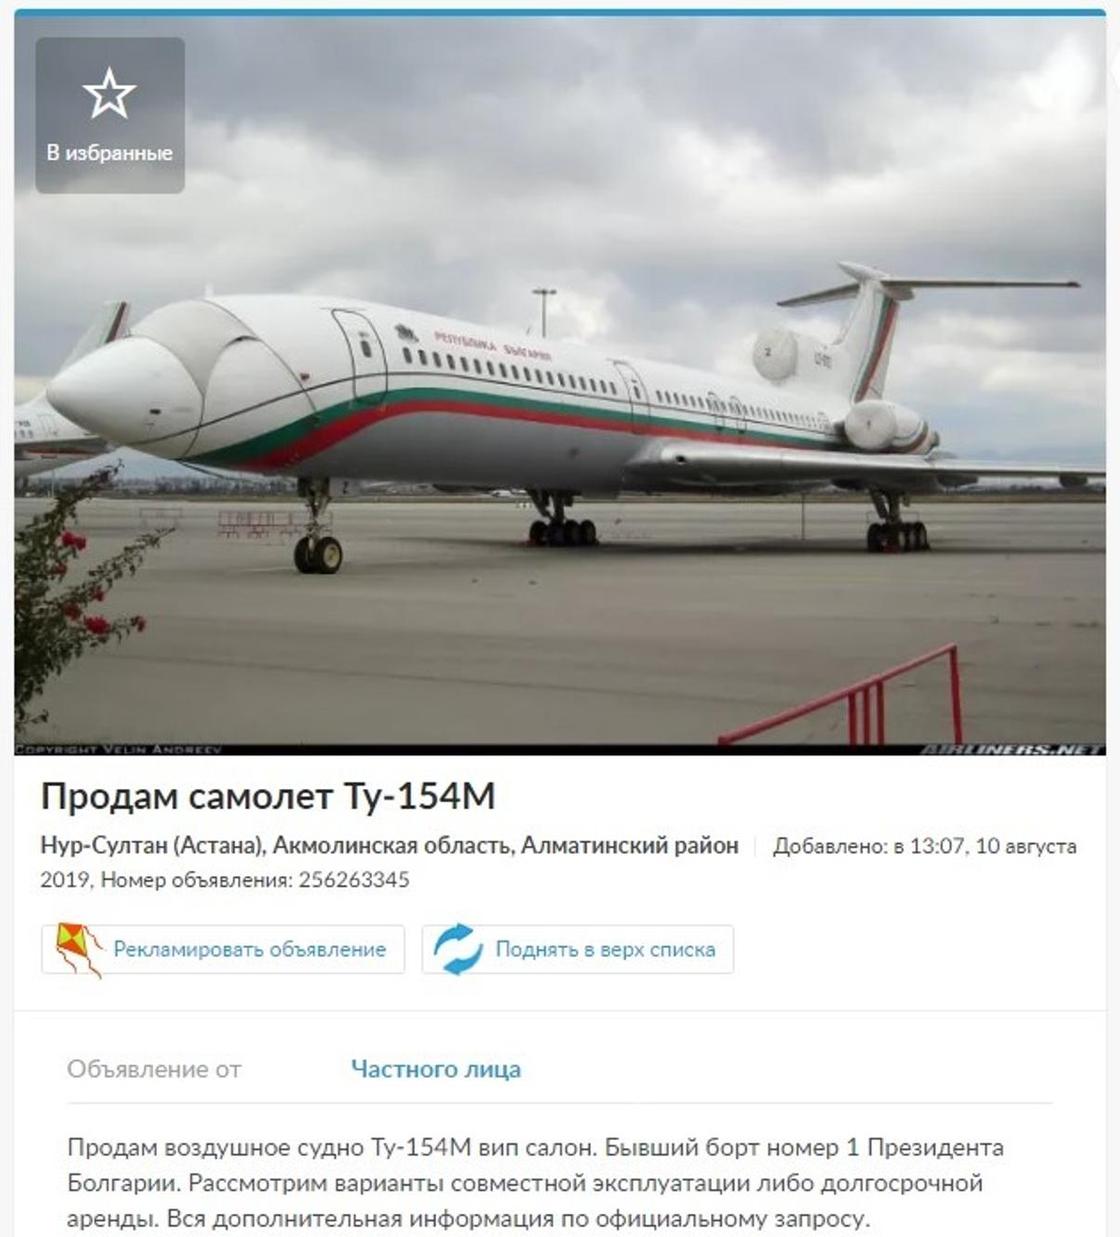 Самолет Ту-154 "президента Болгарии" за 950 млн тенге продают в Нур-Султане (фото)